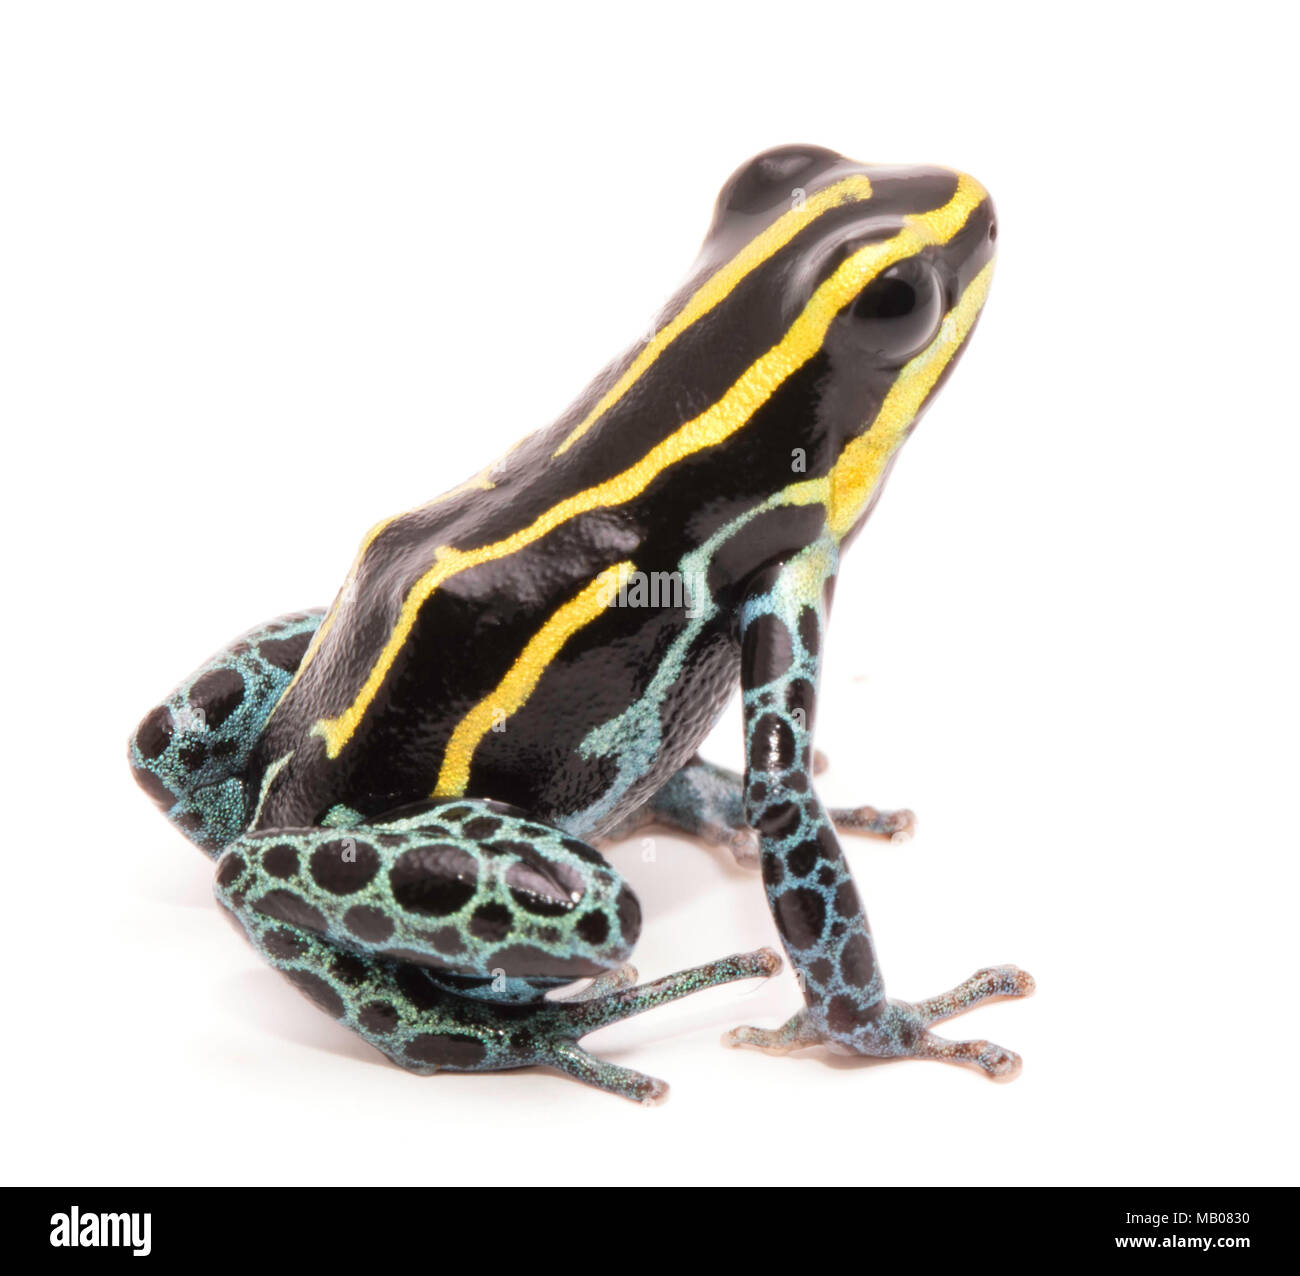 Gelb gestreifte Poison dart Frog, Ranitomeya ventrimaculata. Makro einer kleinen giftigen Tier, aus dem Regenwald des Amazonas. Auf weiß isoliert. Stockfoto